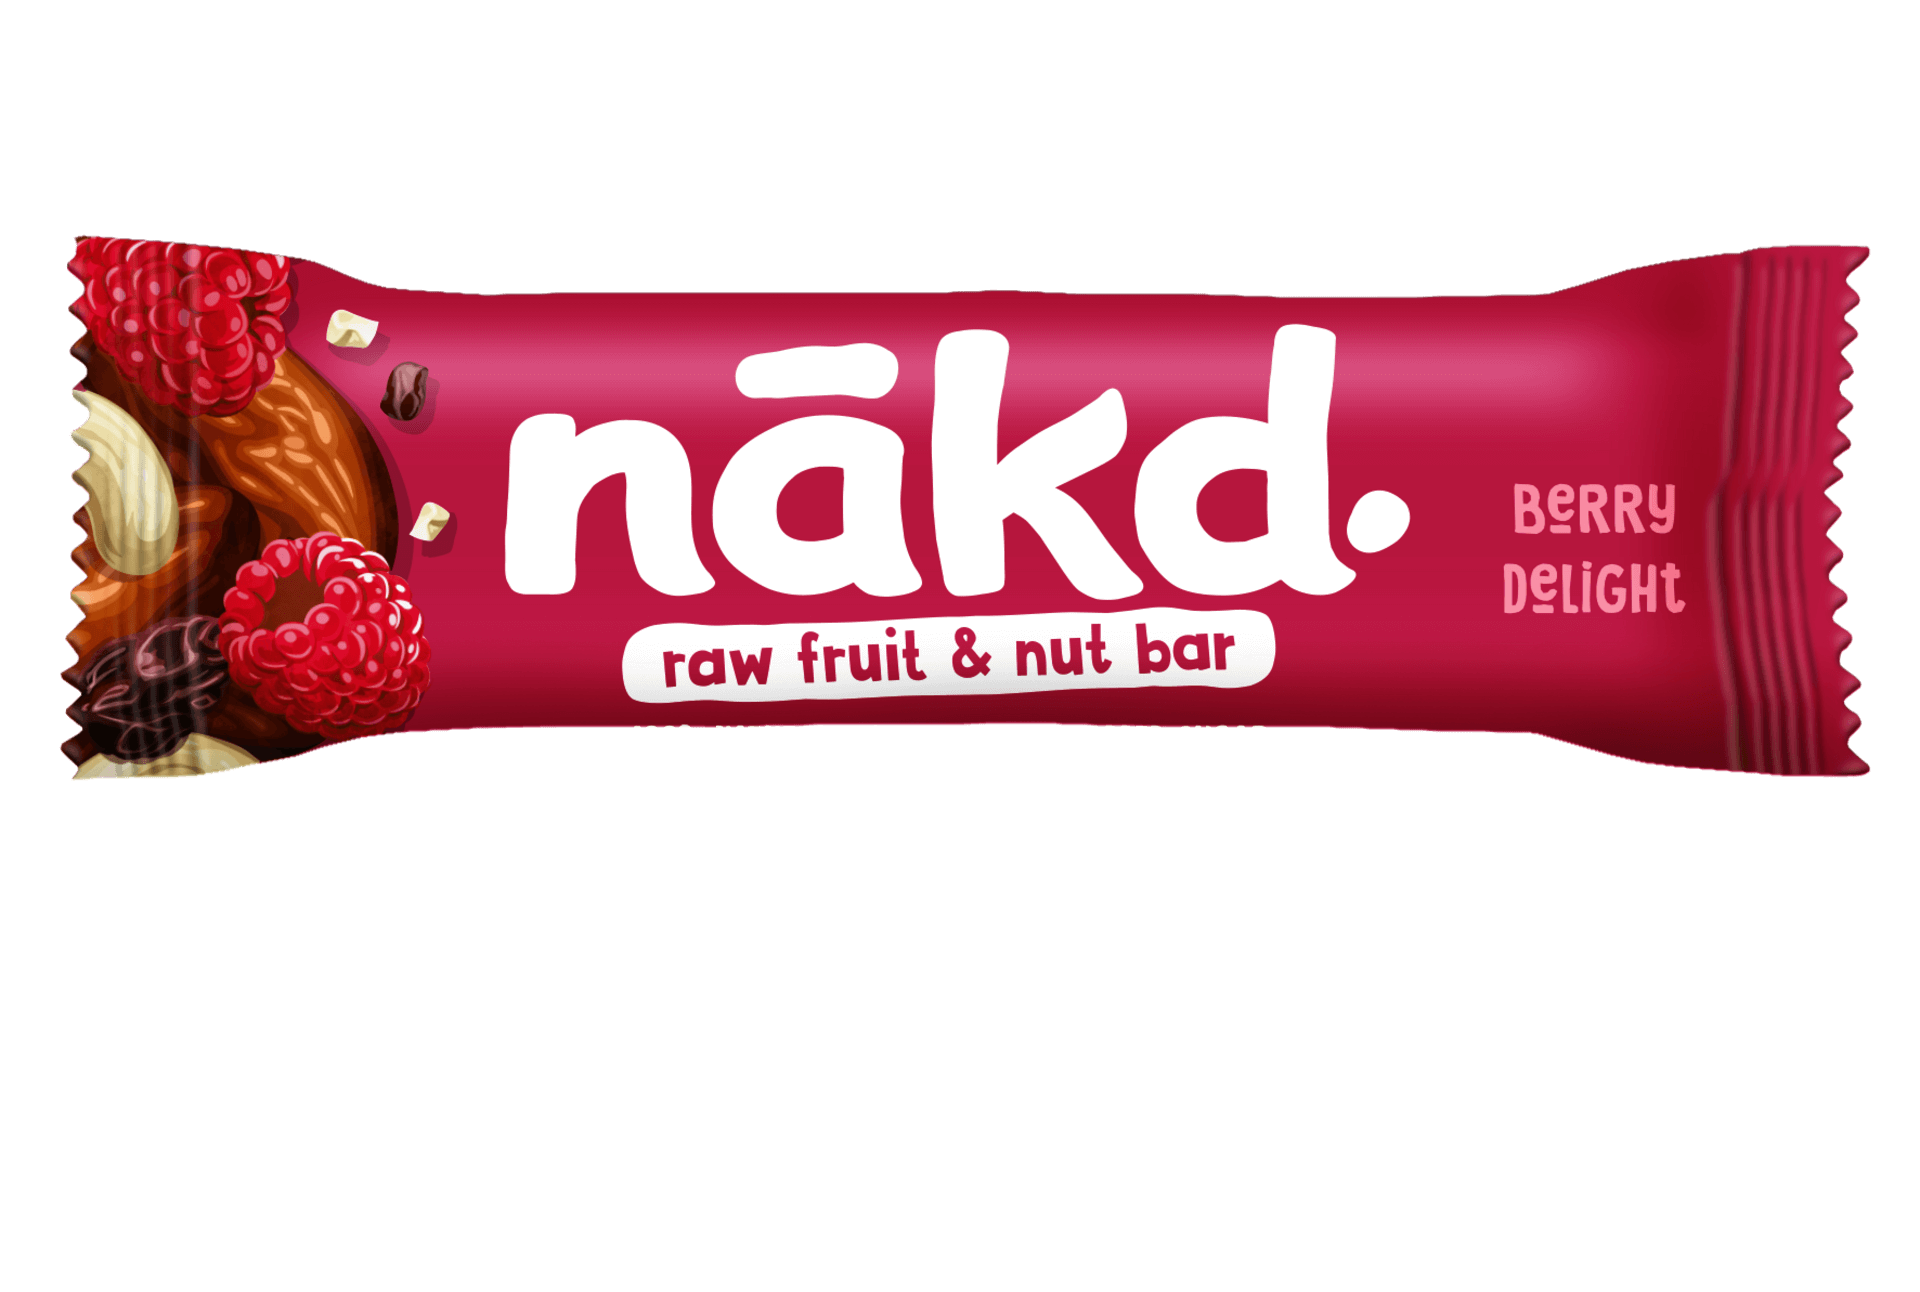 Nakd Berry delight 35 g